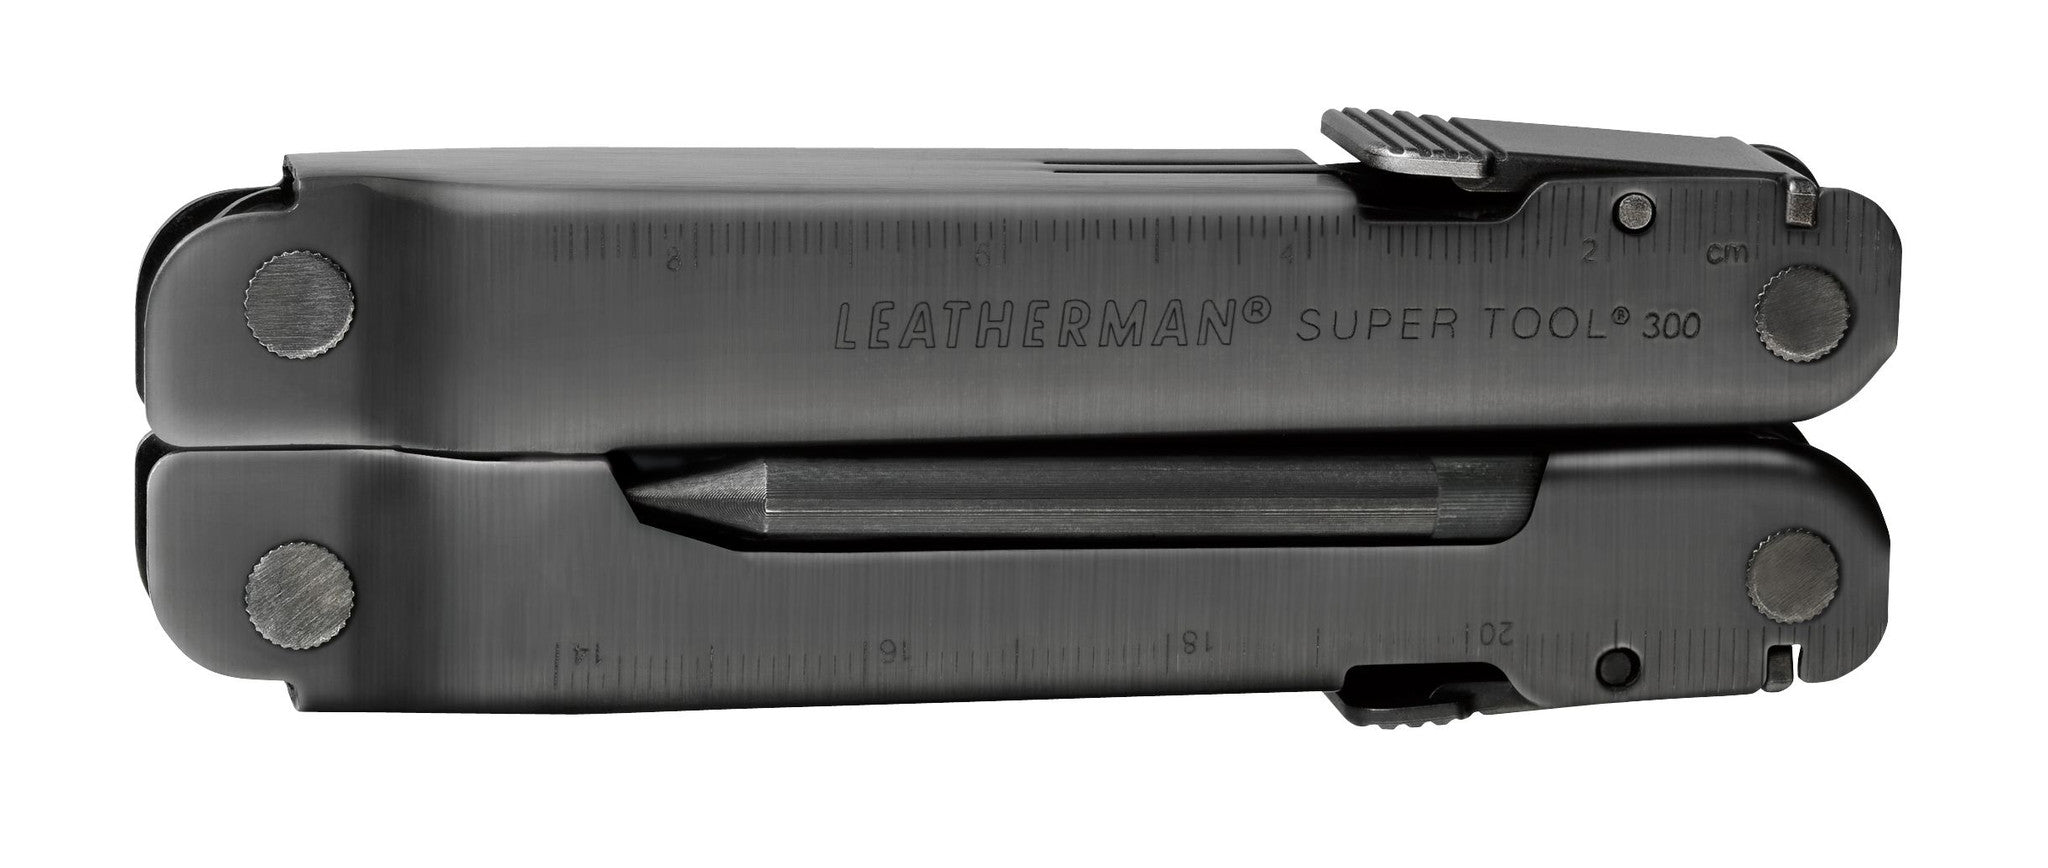 Leatherman Leatherman Super Tool 300 EOD - BNR Industrial